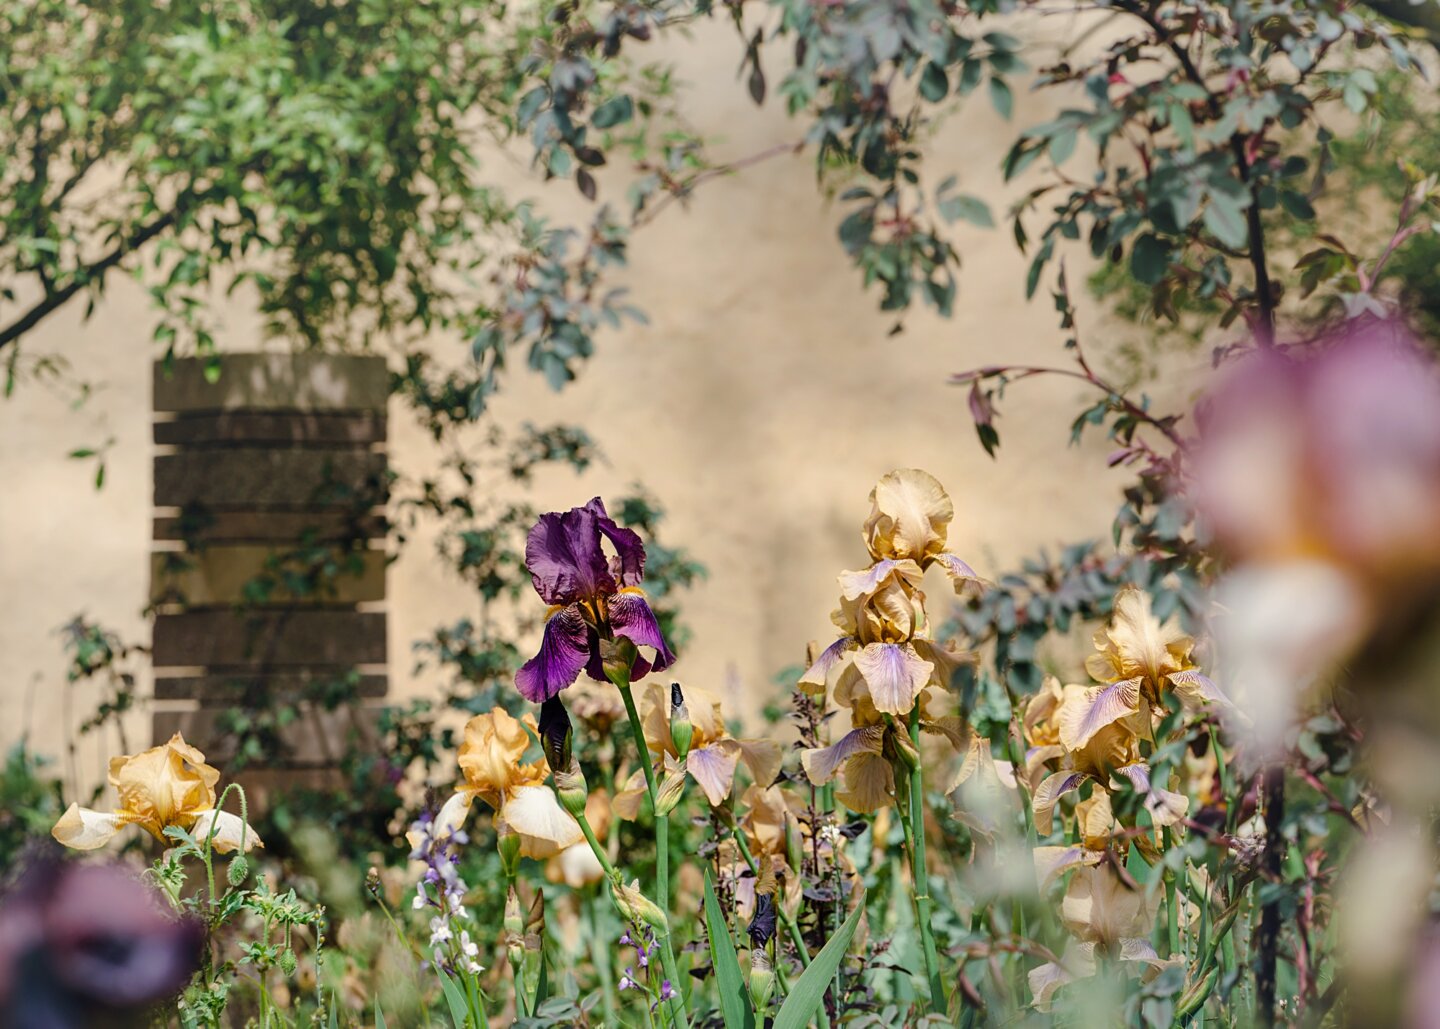 Iris 'Benton Menace' and 'Benton Olive' details in garden by Sarah Price